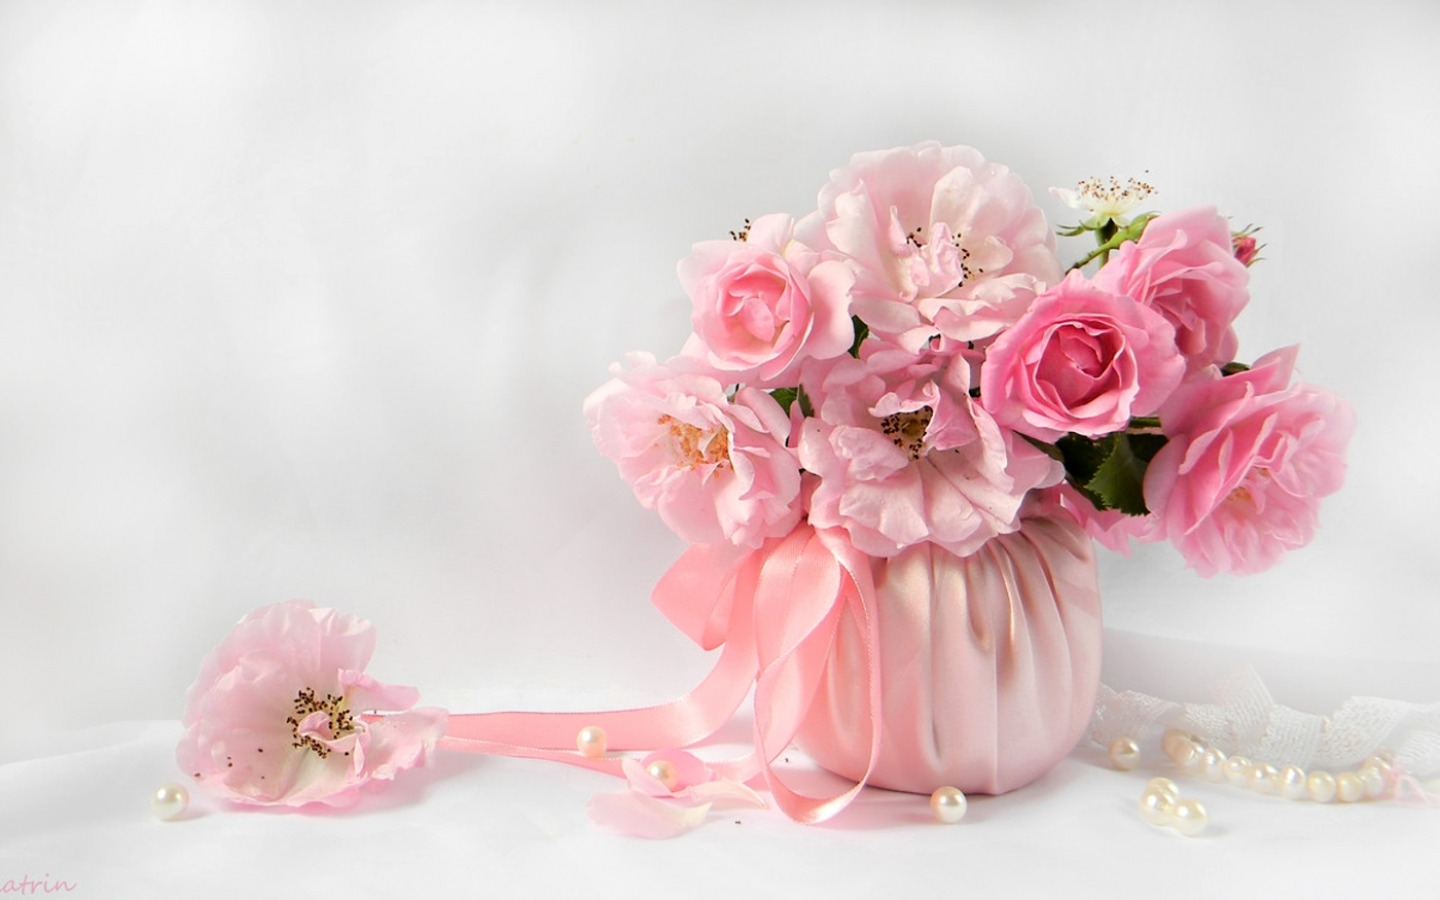 Peony là loại hoa được yêu thích vì màu sắc phong phú và hương thơm tuyệt vời. Hãy nhấn vào hình ảnh để thưởng thức vẻ đẹp của Peony.